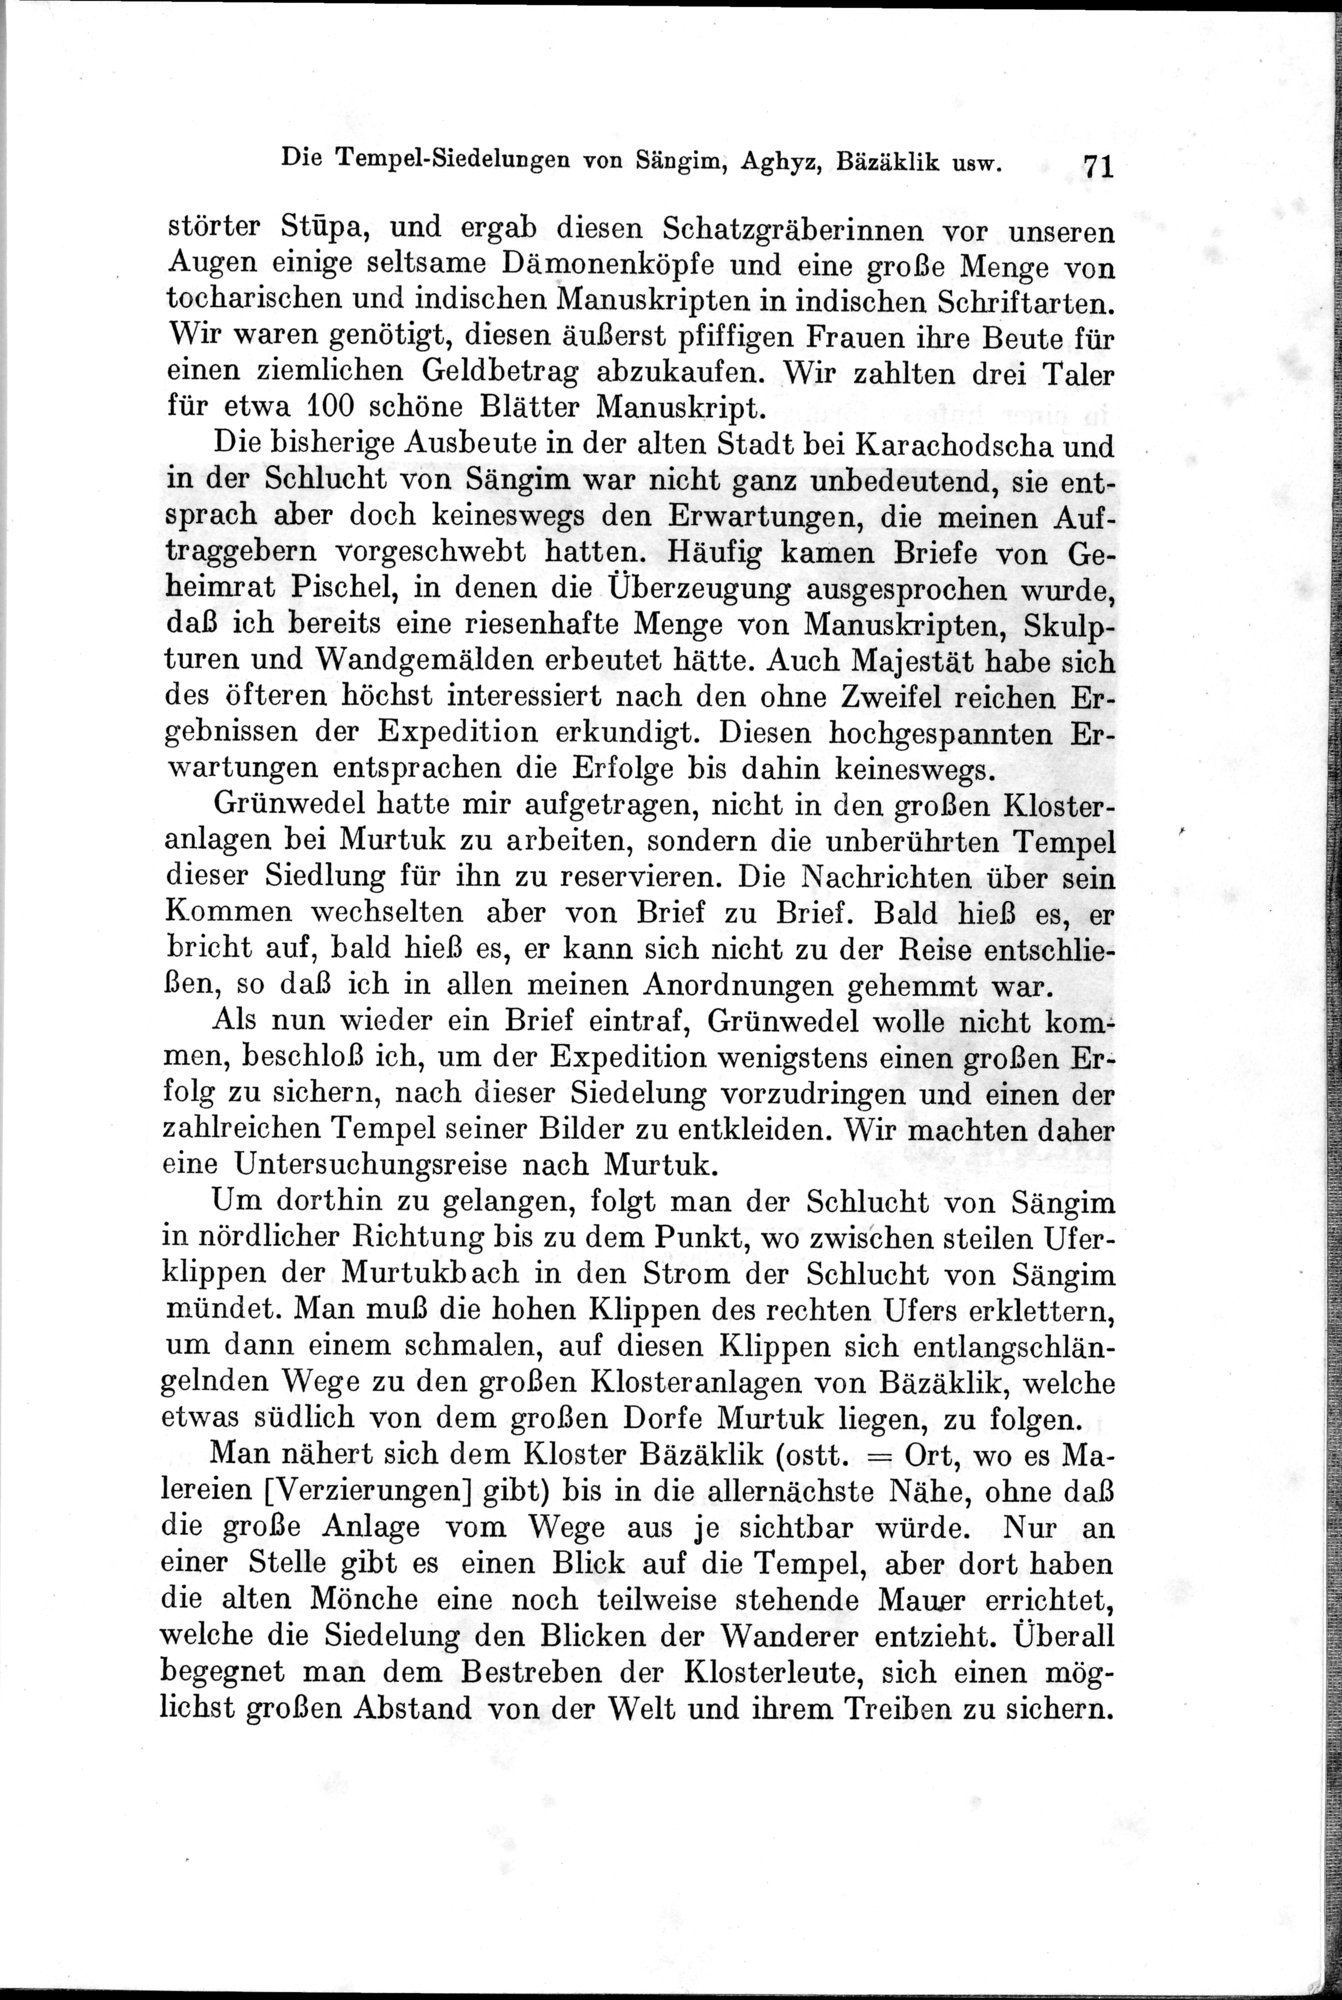 Auf Hellas Spuren in Ostturkistan : vol.1 / Page 105 (Grayscale High Resolution Image)